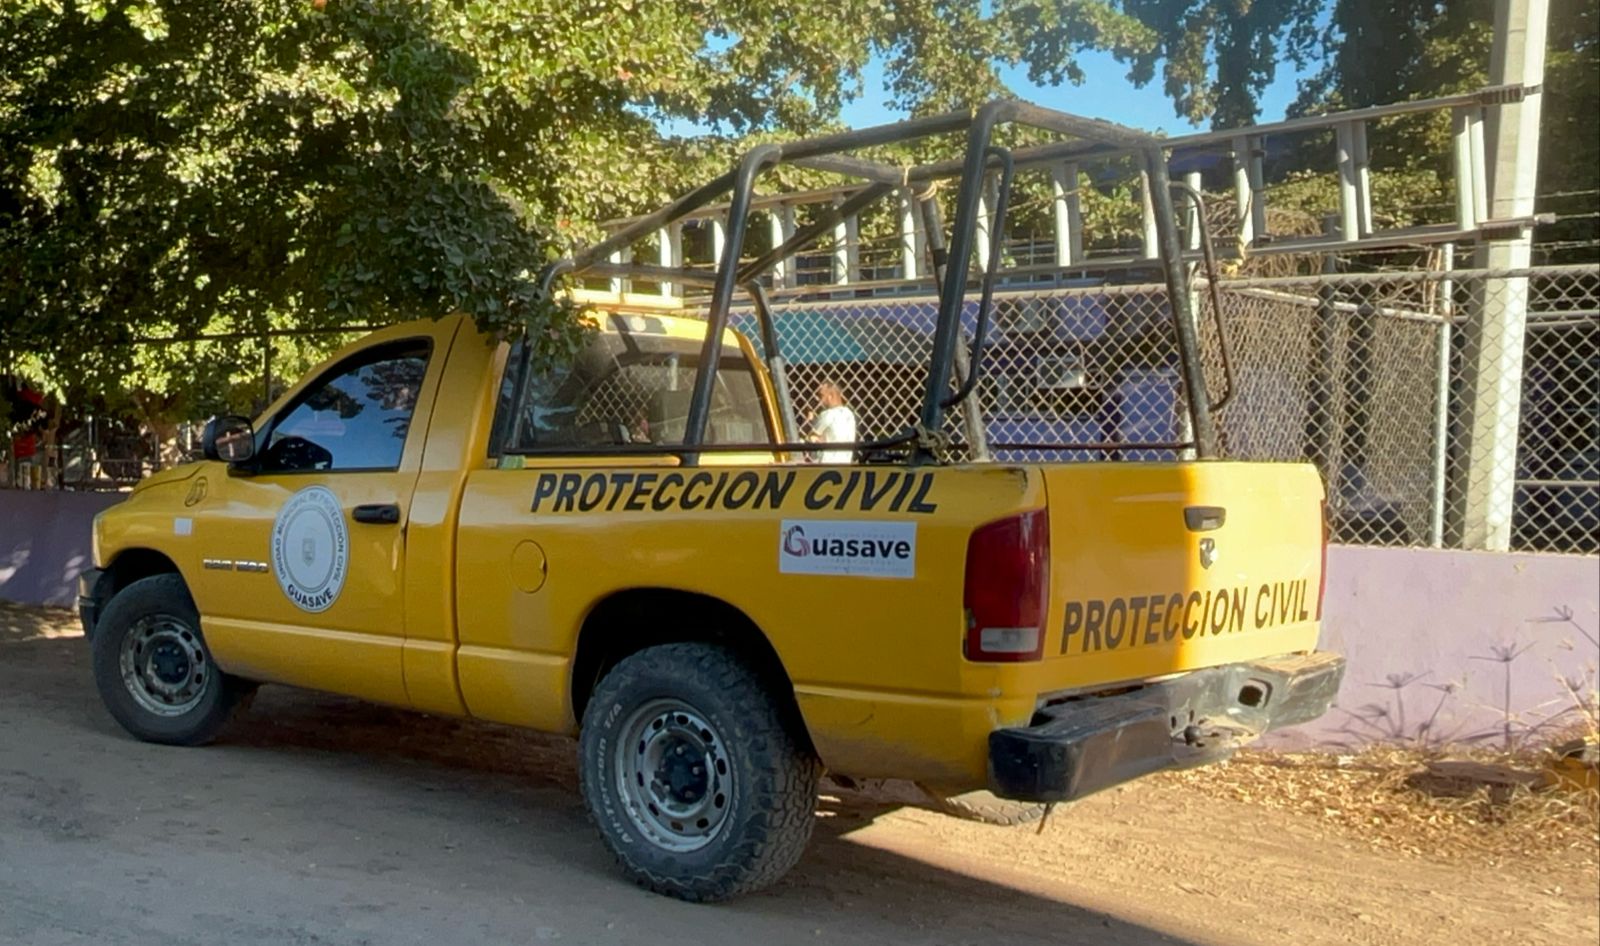 Camioneta color amarillo de Protección Civil Guasave estacionada